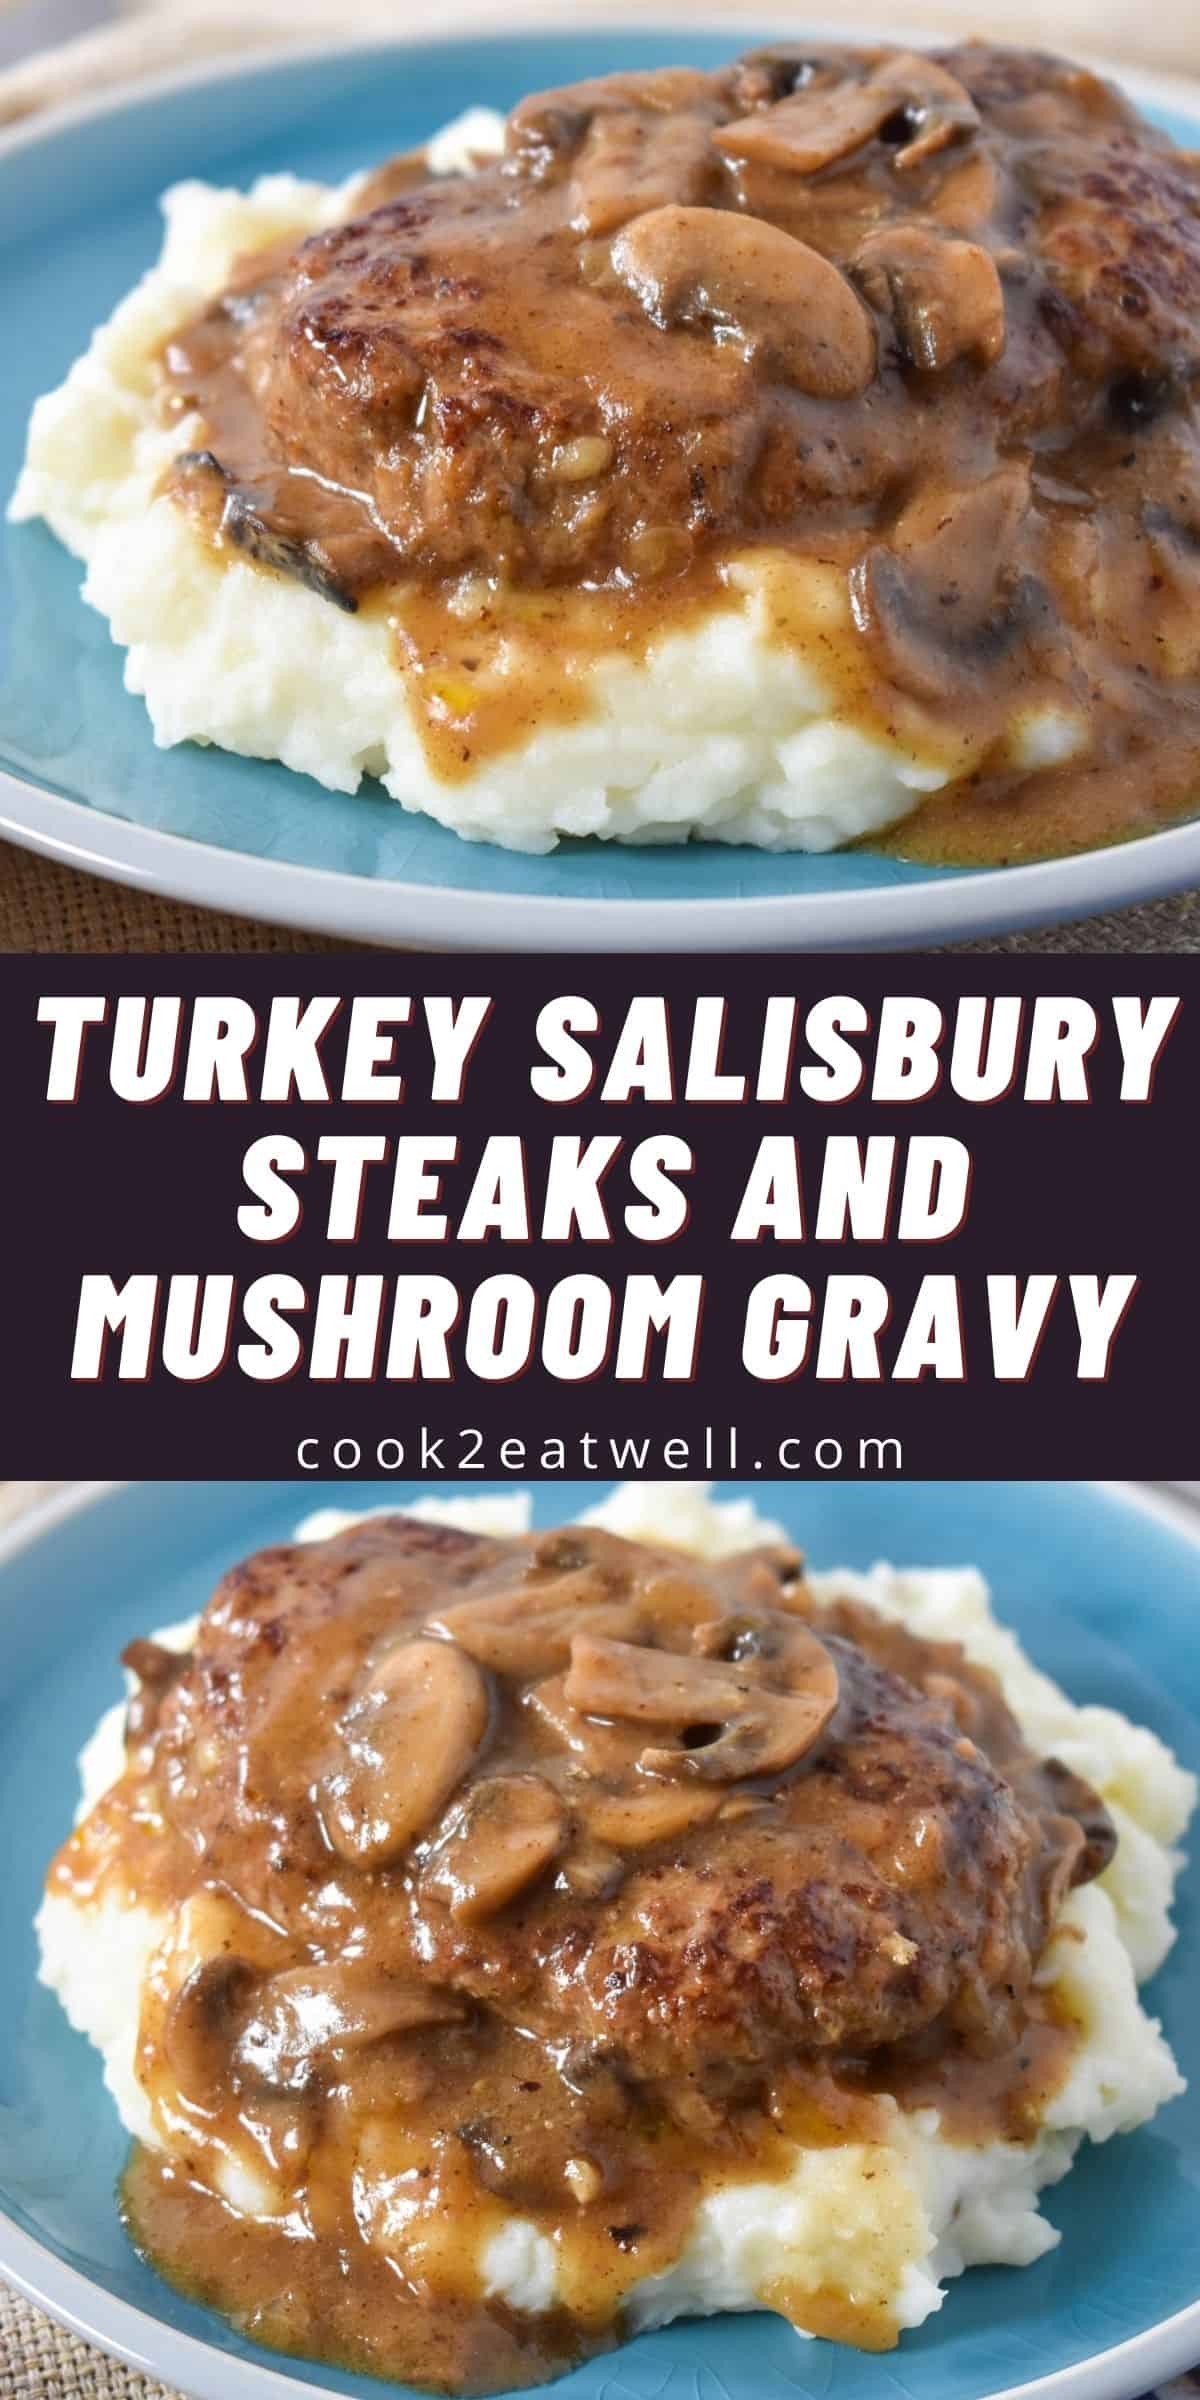 Turkey Salisbury Steaks and Mushroom Gravy - Cook2eatwell